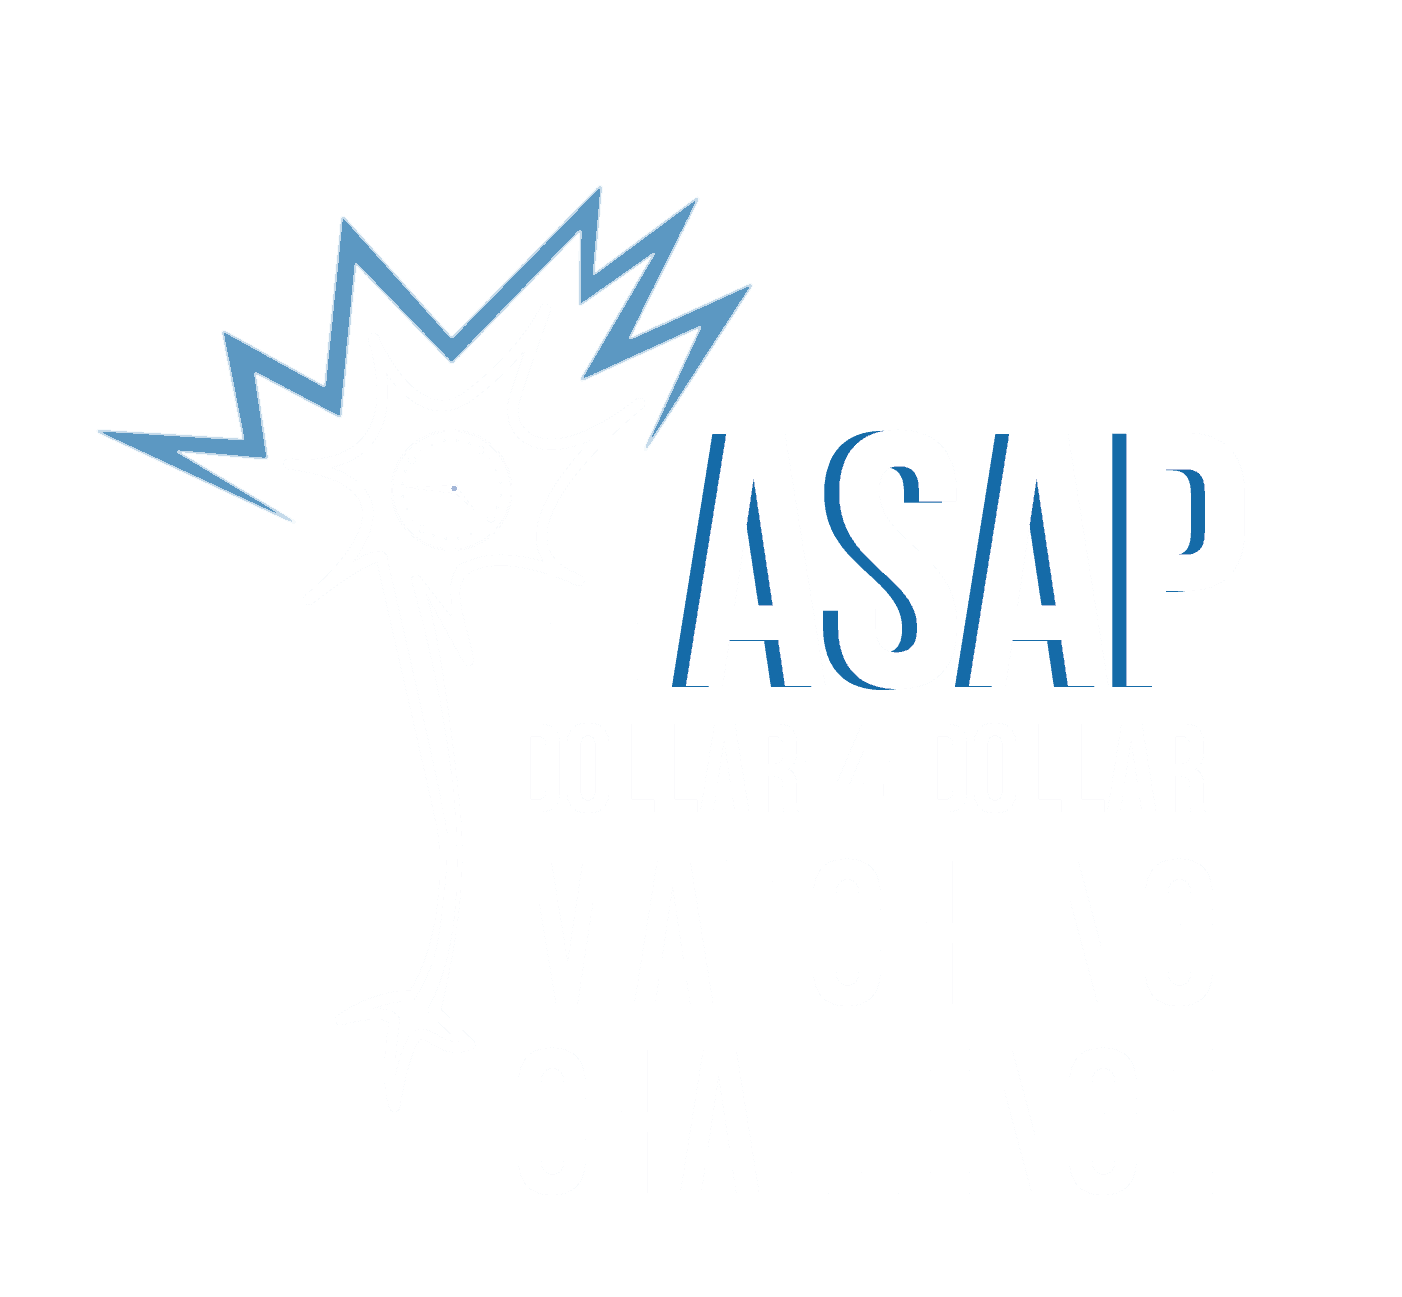 El desafío de emparejamiento ASAP Dollar-4-Dollar